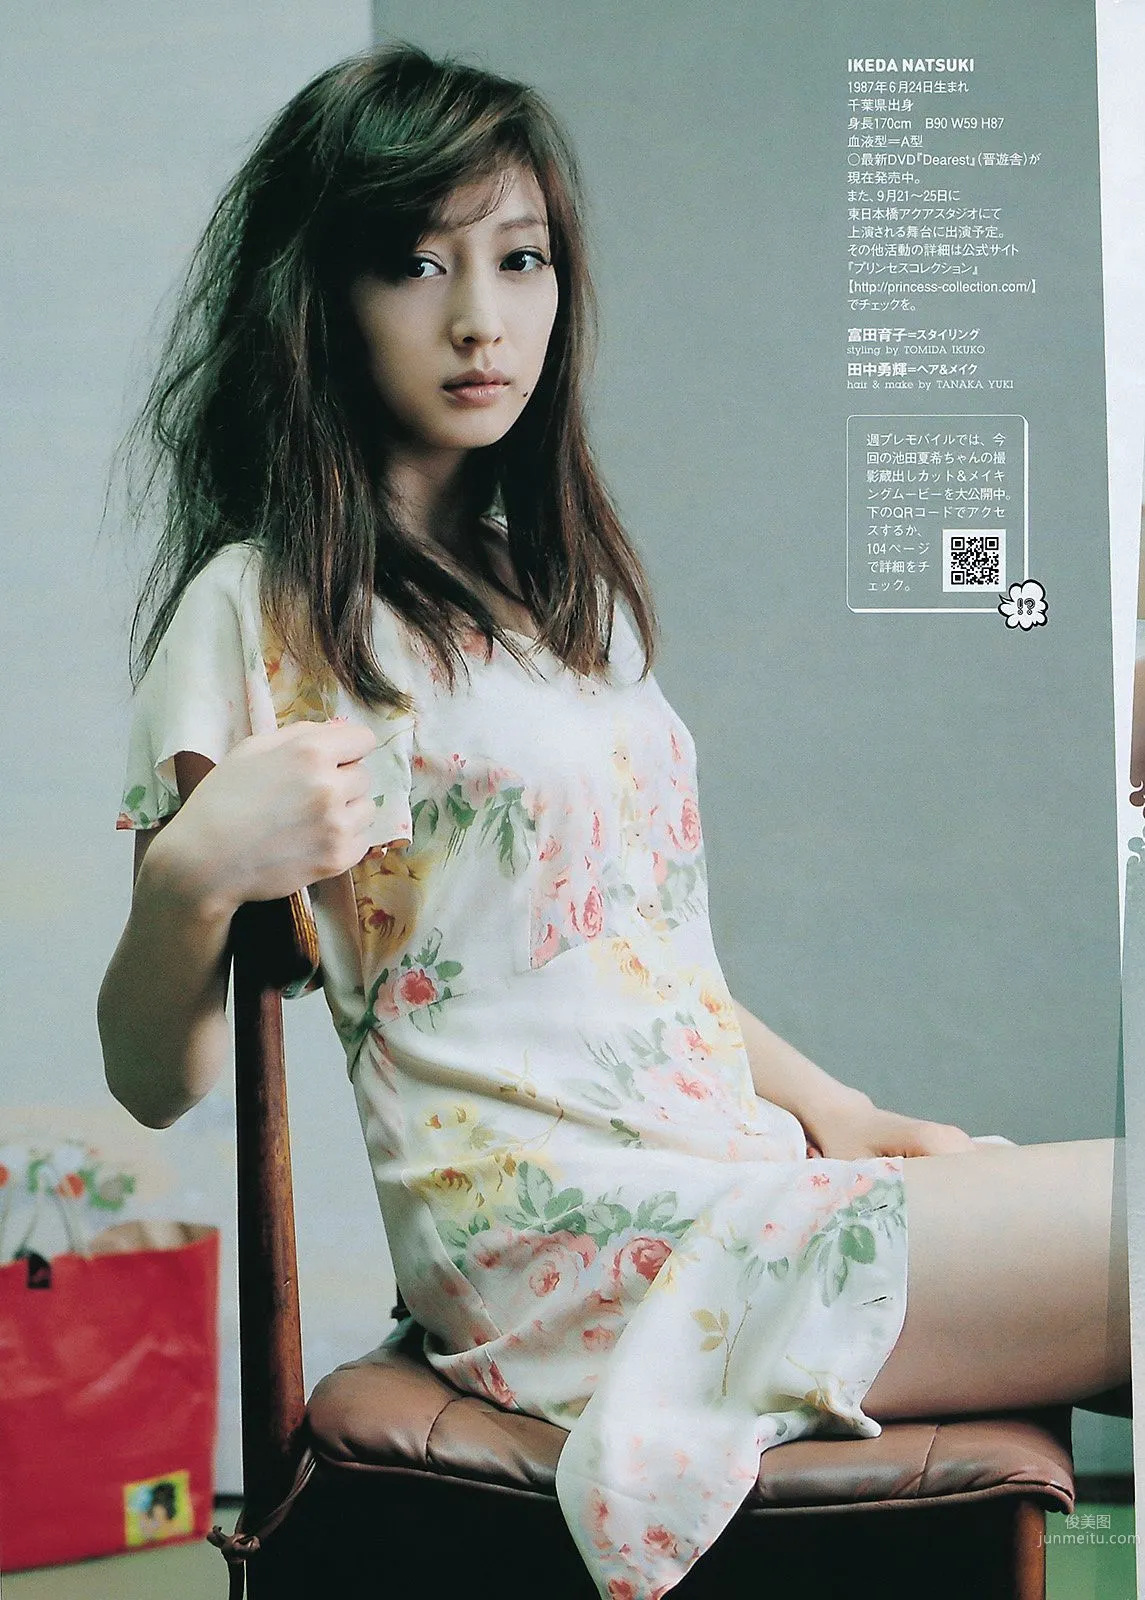 桐谷美玲 仁藤みさき 高桥爱 青木爱 AKB48 池田夏希 [Weekly Playboy] 2011年No.38 写真杂志36